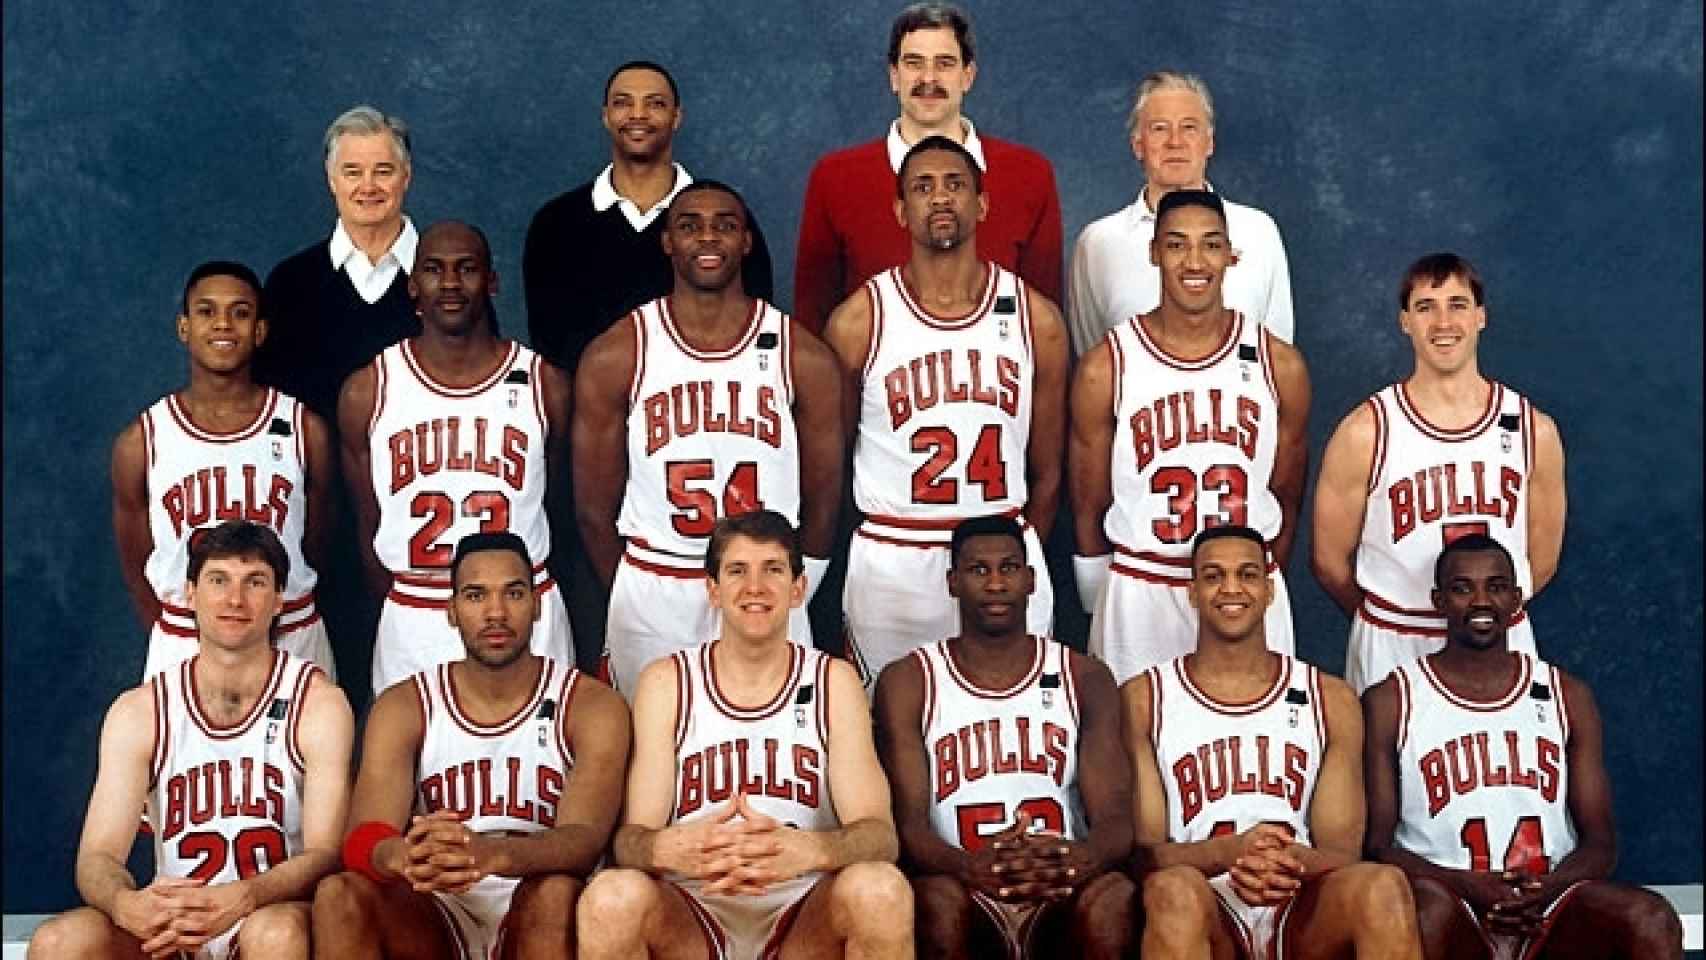 Plantilla de los Chicago Bulls del curso 1991/1992.